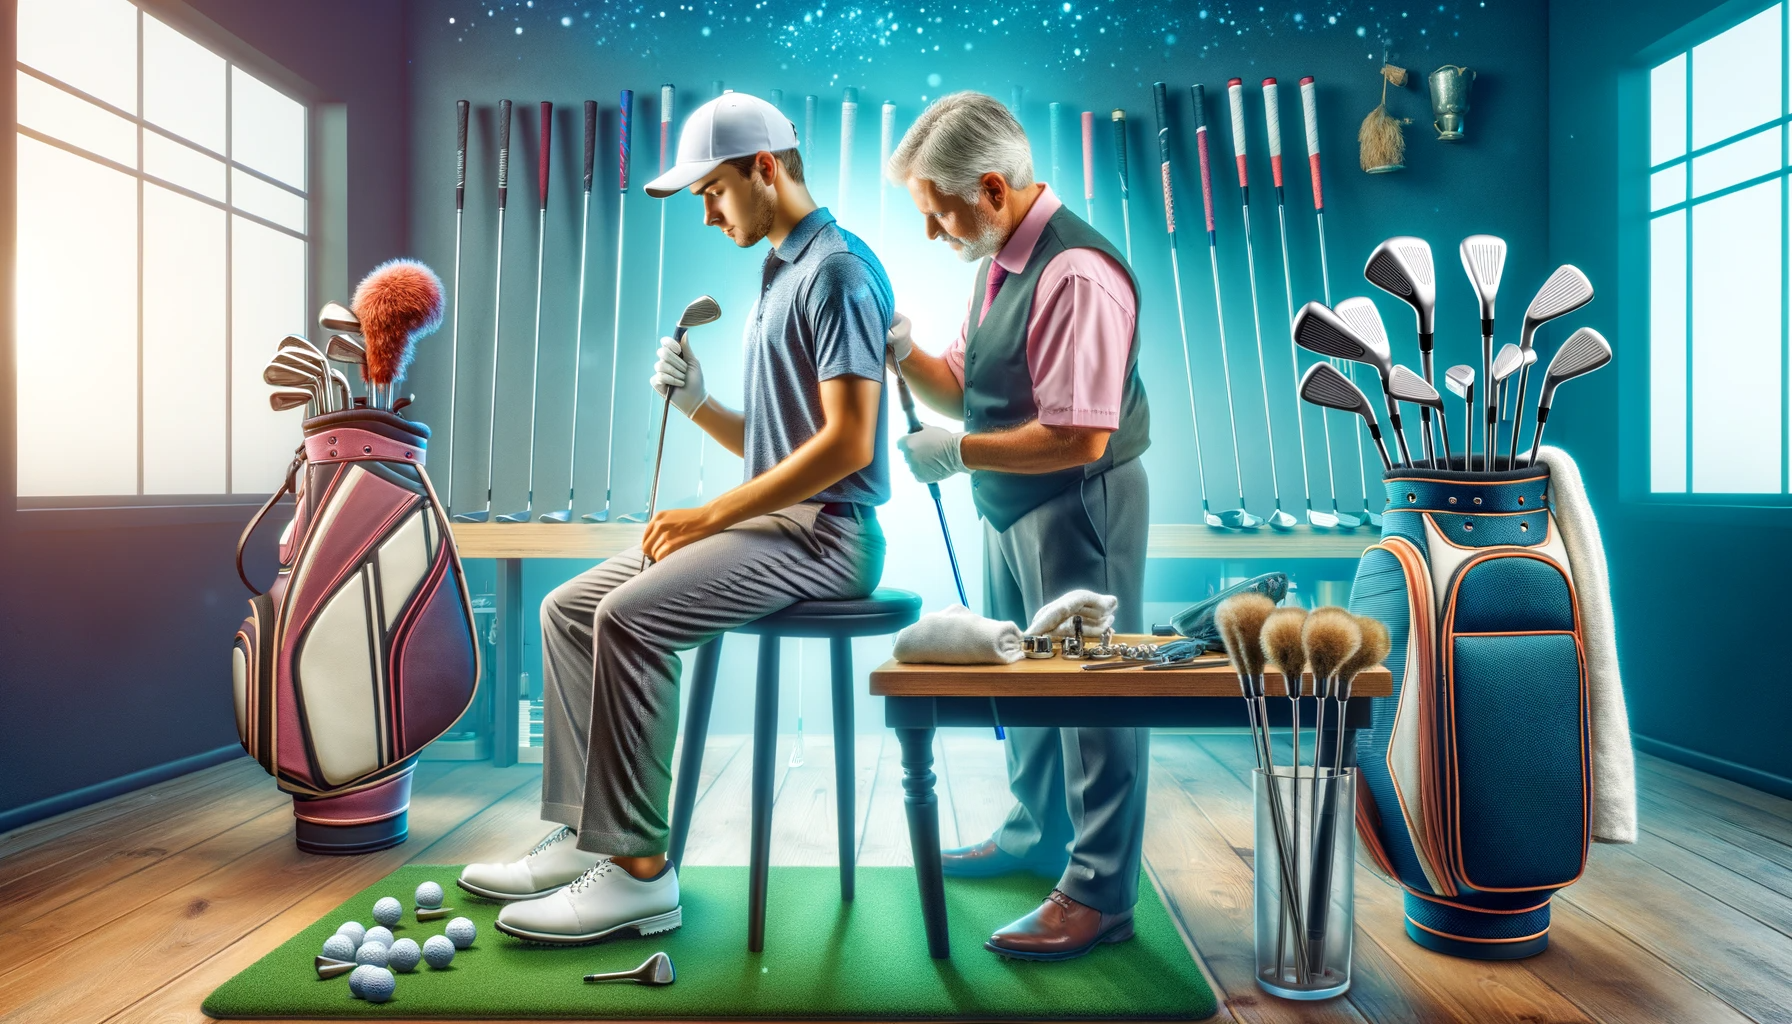 골프에서의 부상 예방과 관리: 스윙 기술&#44; 클럽 피팅&#44; 신체 체크포인트 - 적절한 장비 선택과 유지